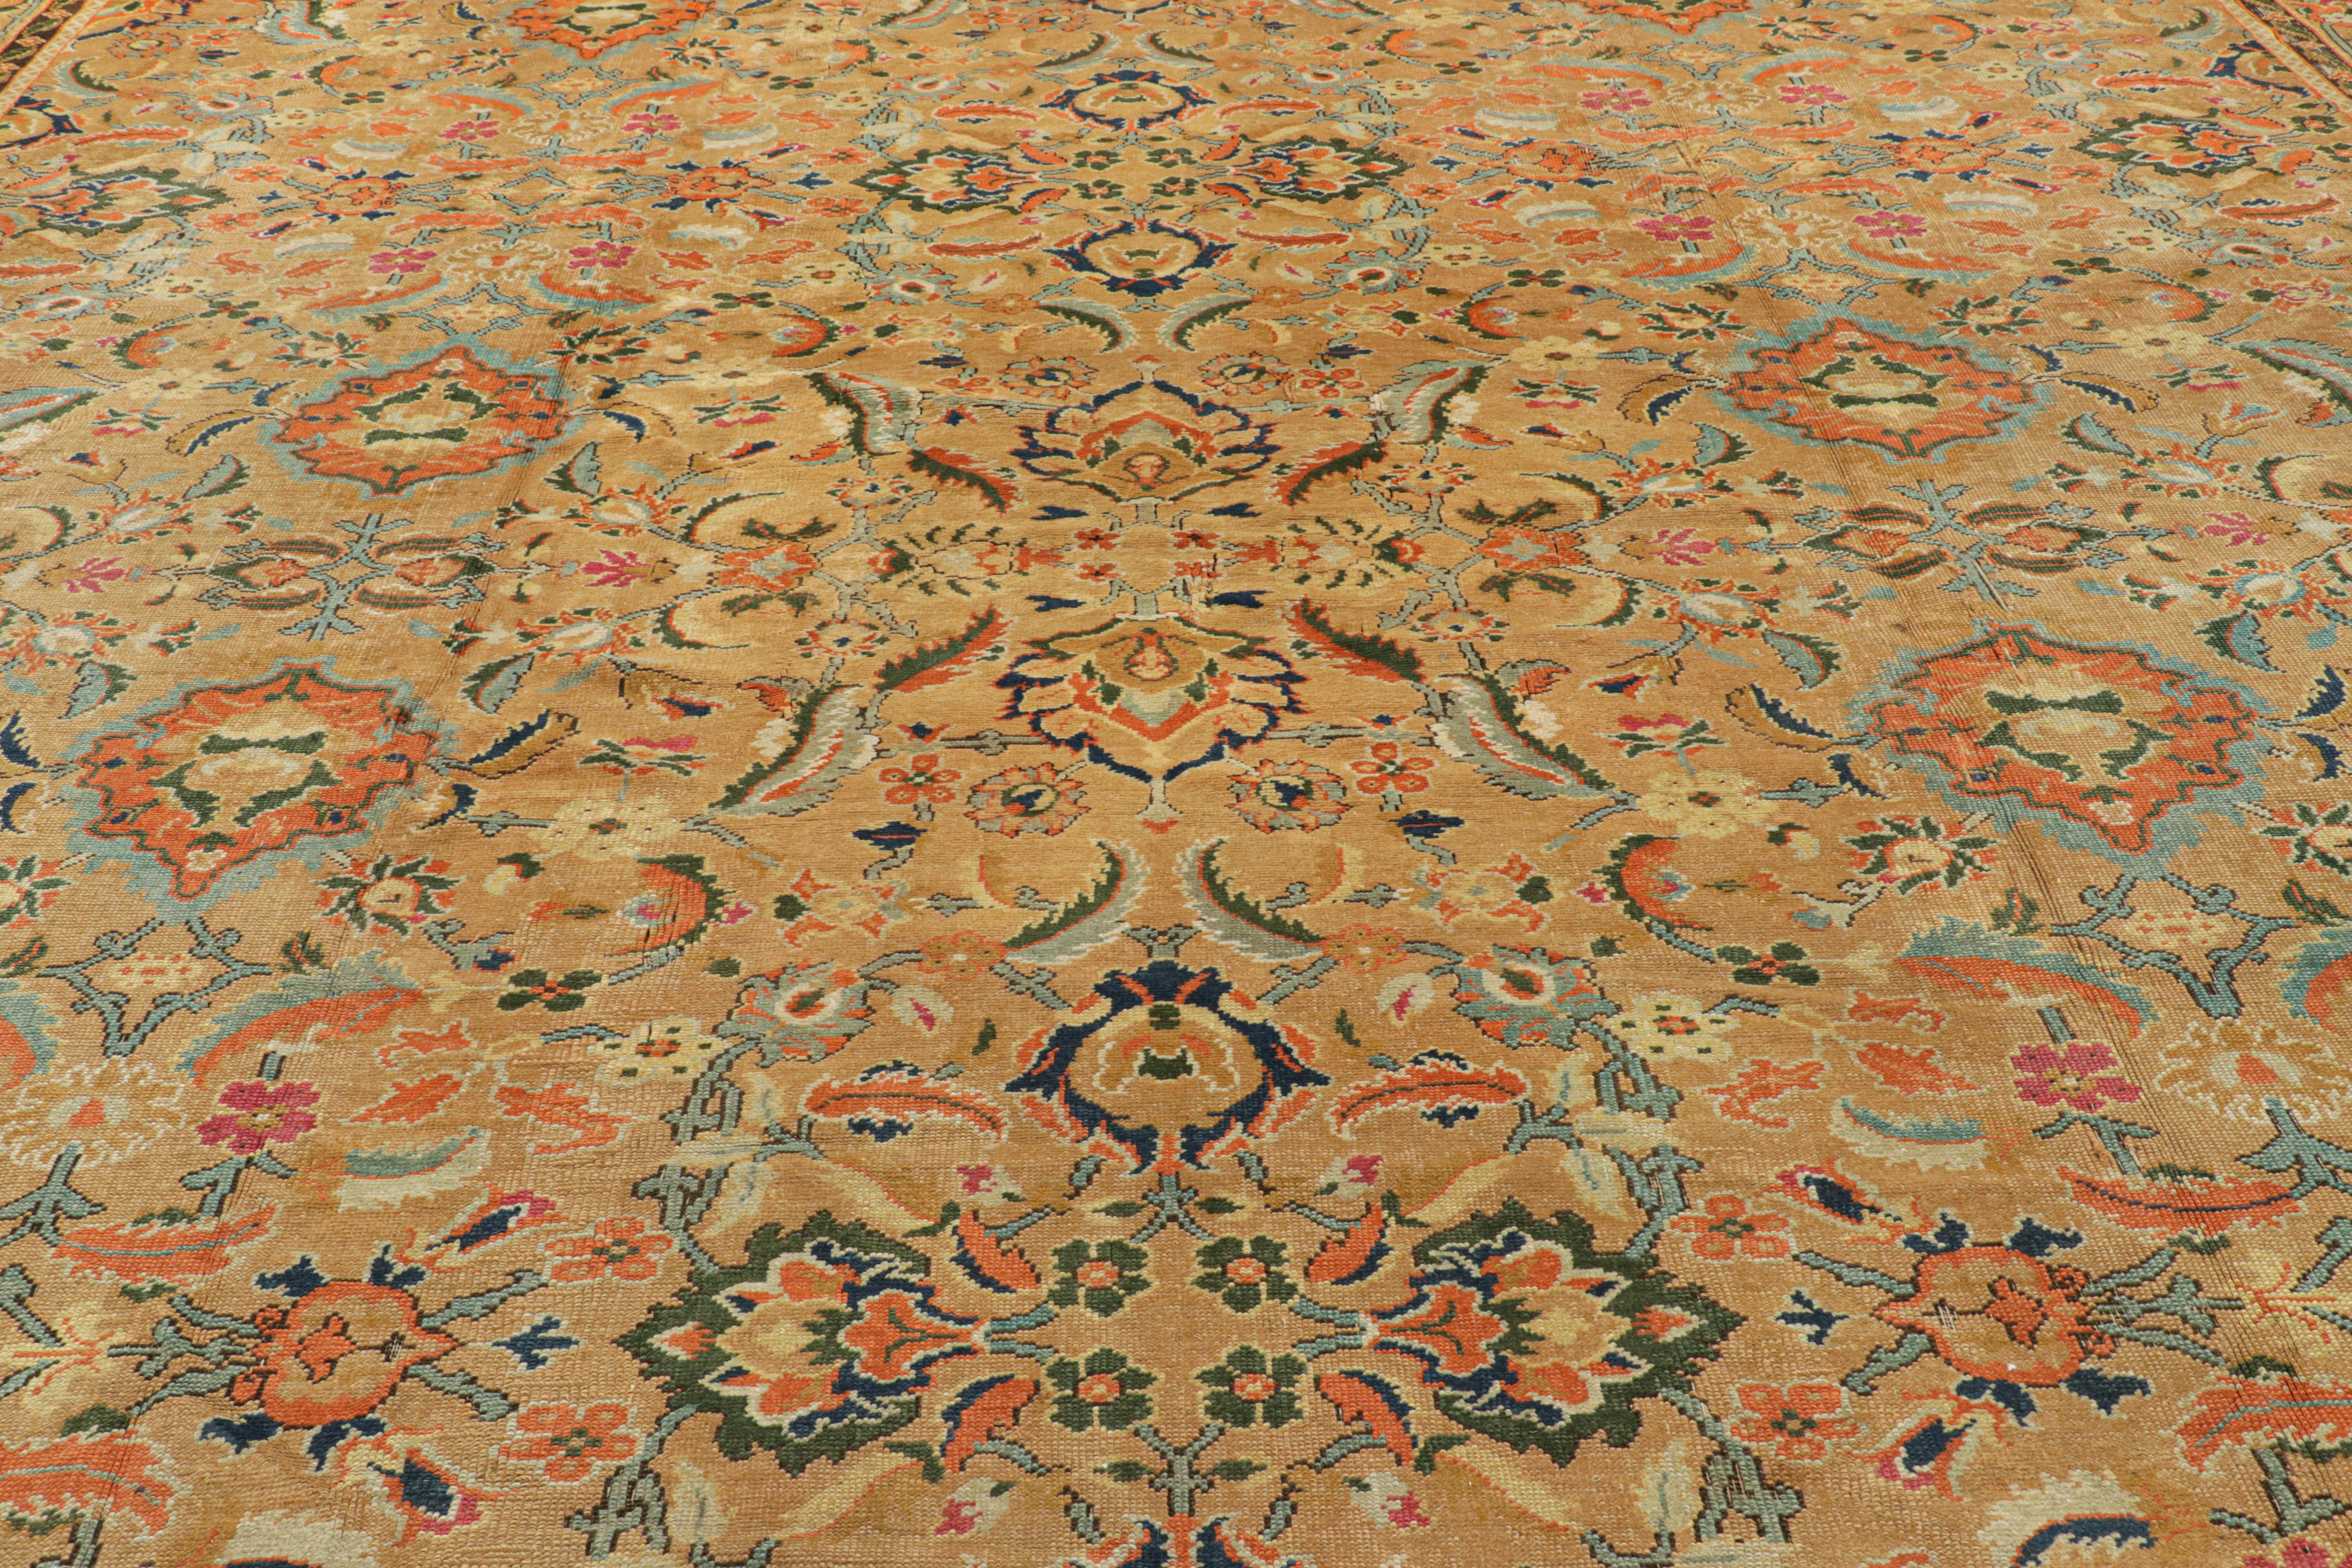 Dieser 15x26 große antike Axminster-Teppich wurde um 1850-1860 von Hand in Wolle geknüpft und ist ein äußerst seltener englischer Palastteppich, der eine aufregende neue, übergroße Ergänzung zu unserer europäischen Teppichsammlung darstellt. 

Über